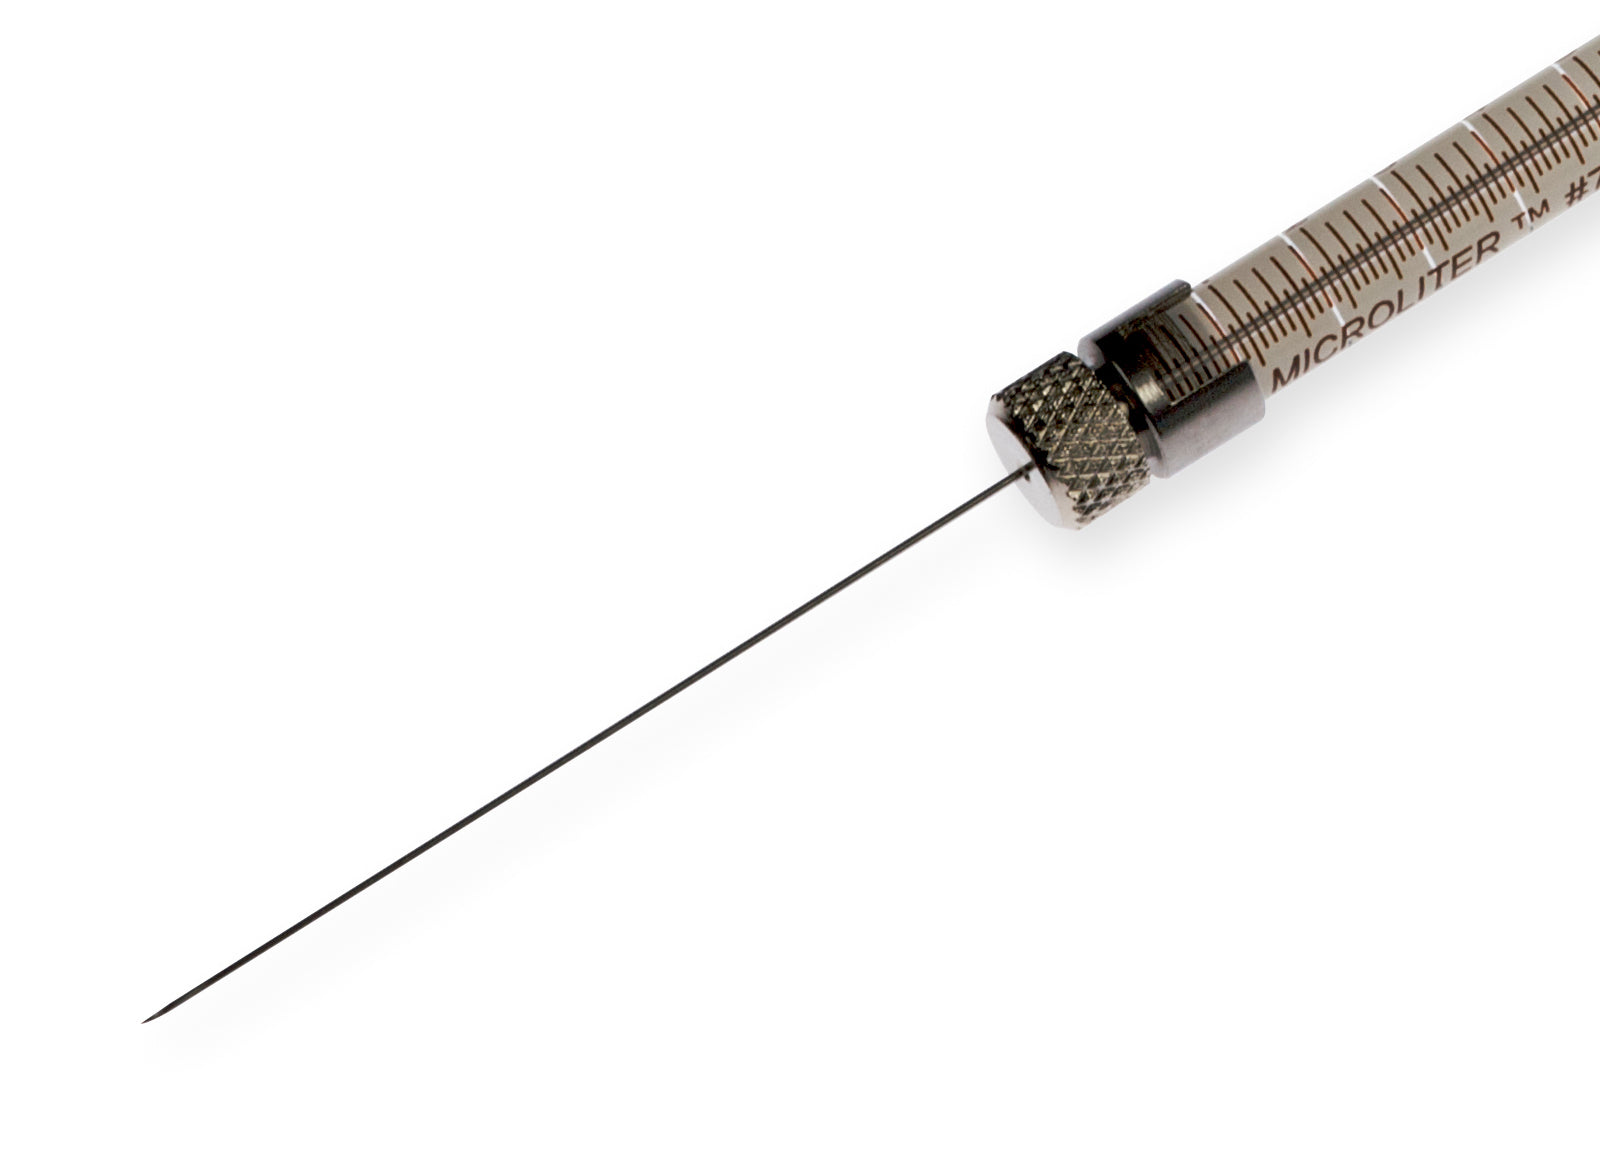 Hamilton Company Small Removable Needles